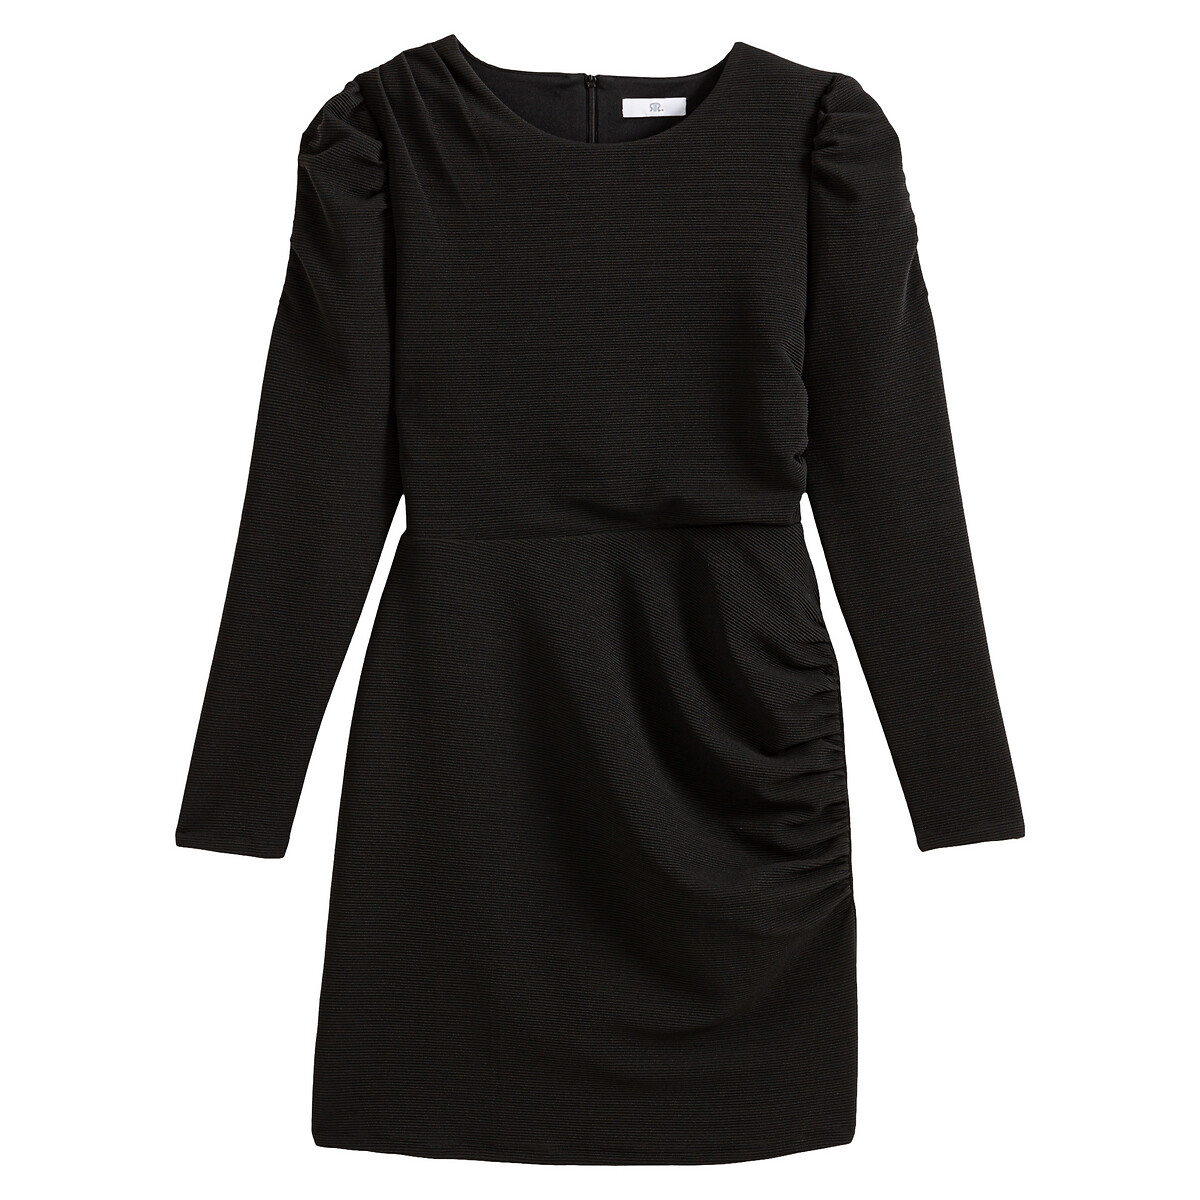 Платье La Redoute Короткое круглый вырез длинные рукава 42 (FR) - 48 (RUS) черный, размер 42 (FR) - 48 (RUS) Короткое круглый вырез длинные рукава 42 (FR) - 48 (RUS) черный - фото 5